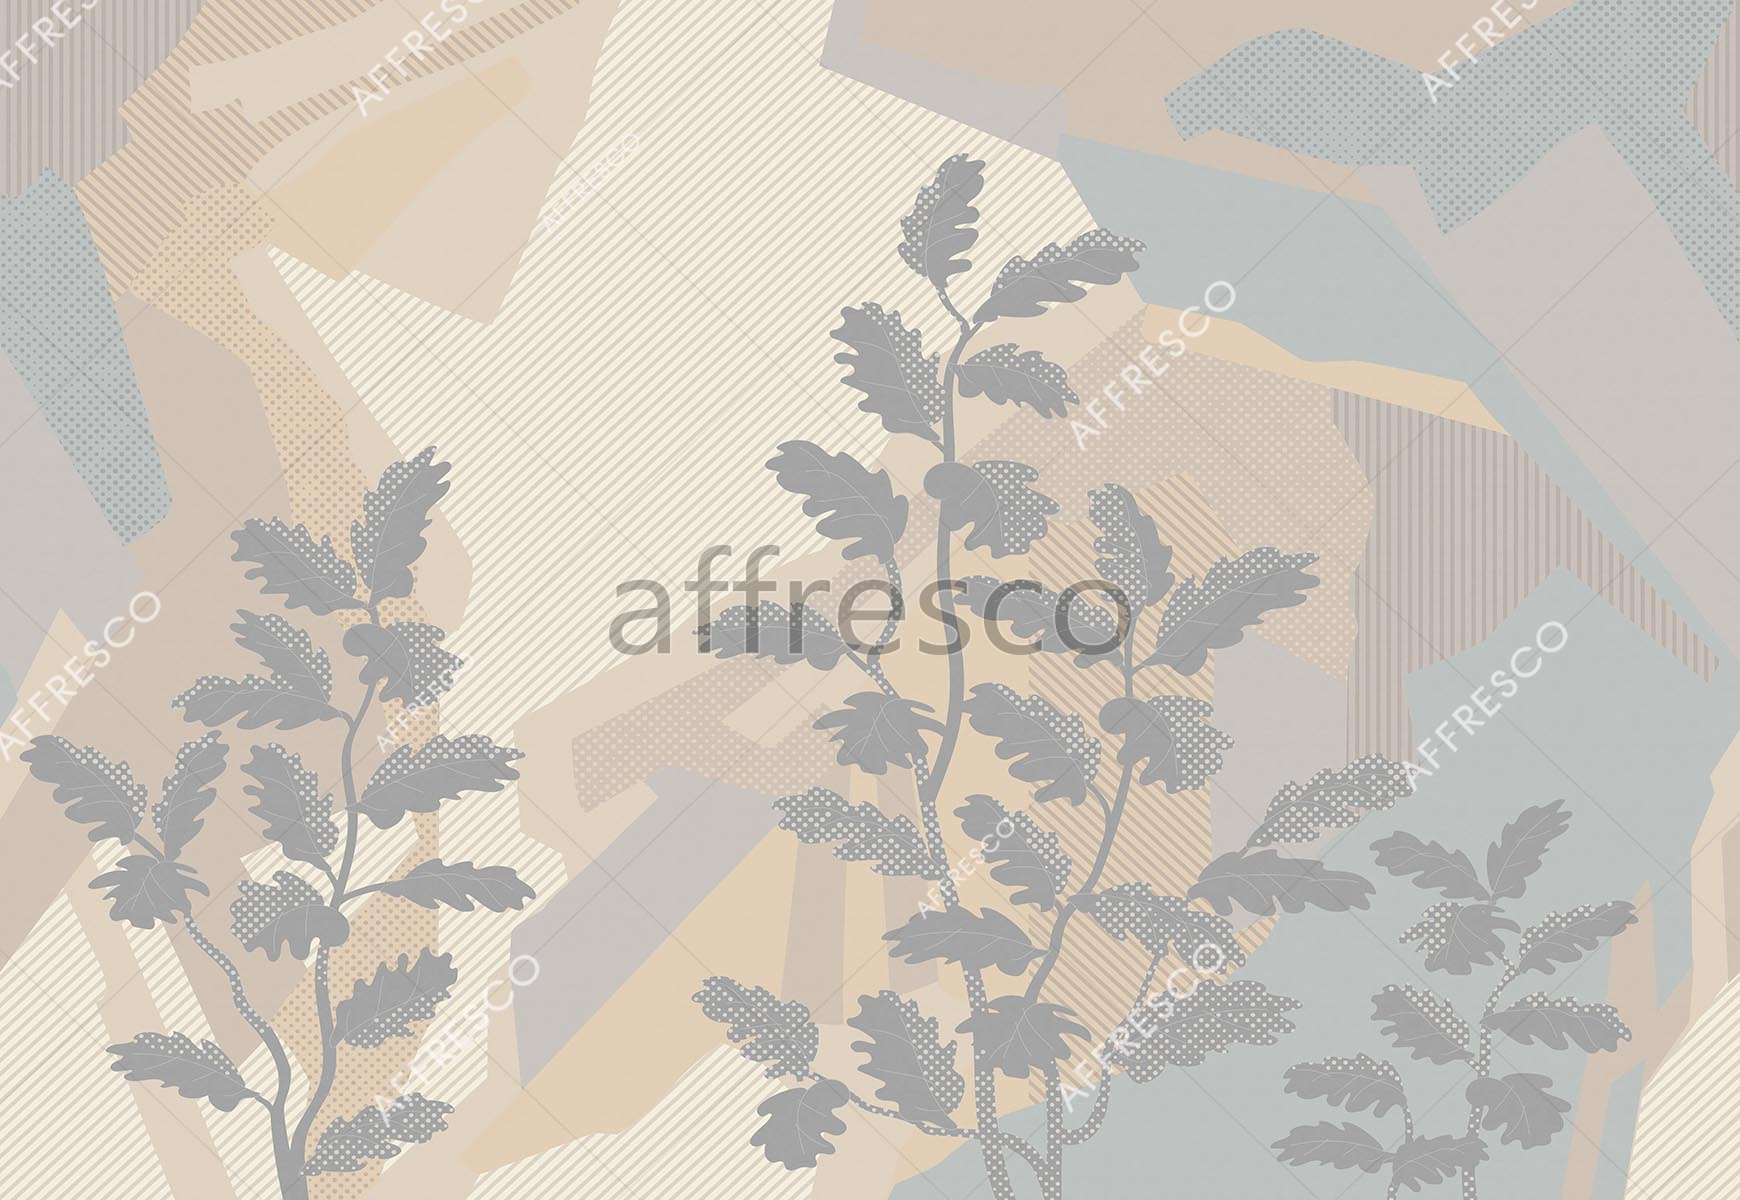 ID139317 | Graphics arts & Ornaments |  | Affresco Factory